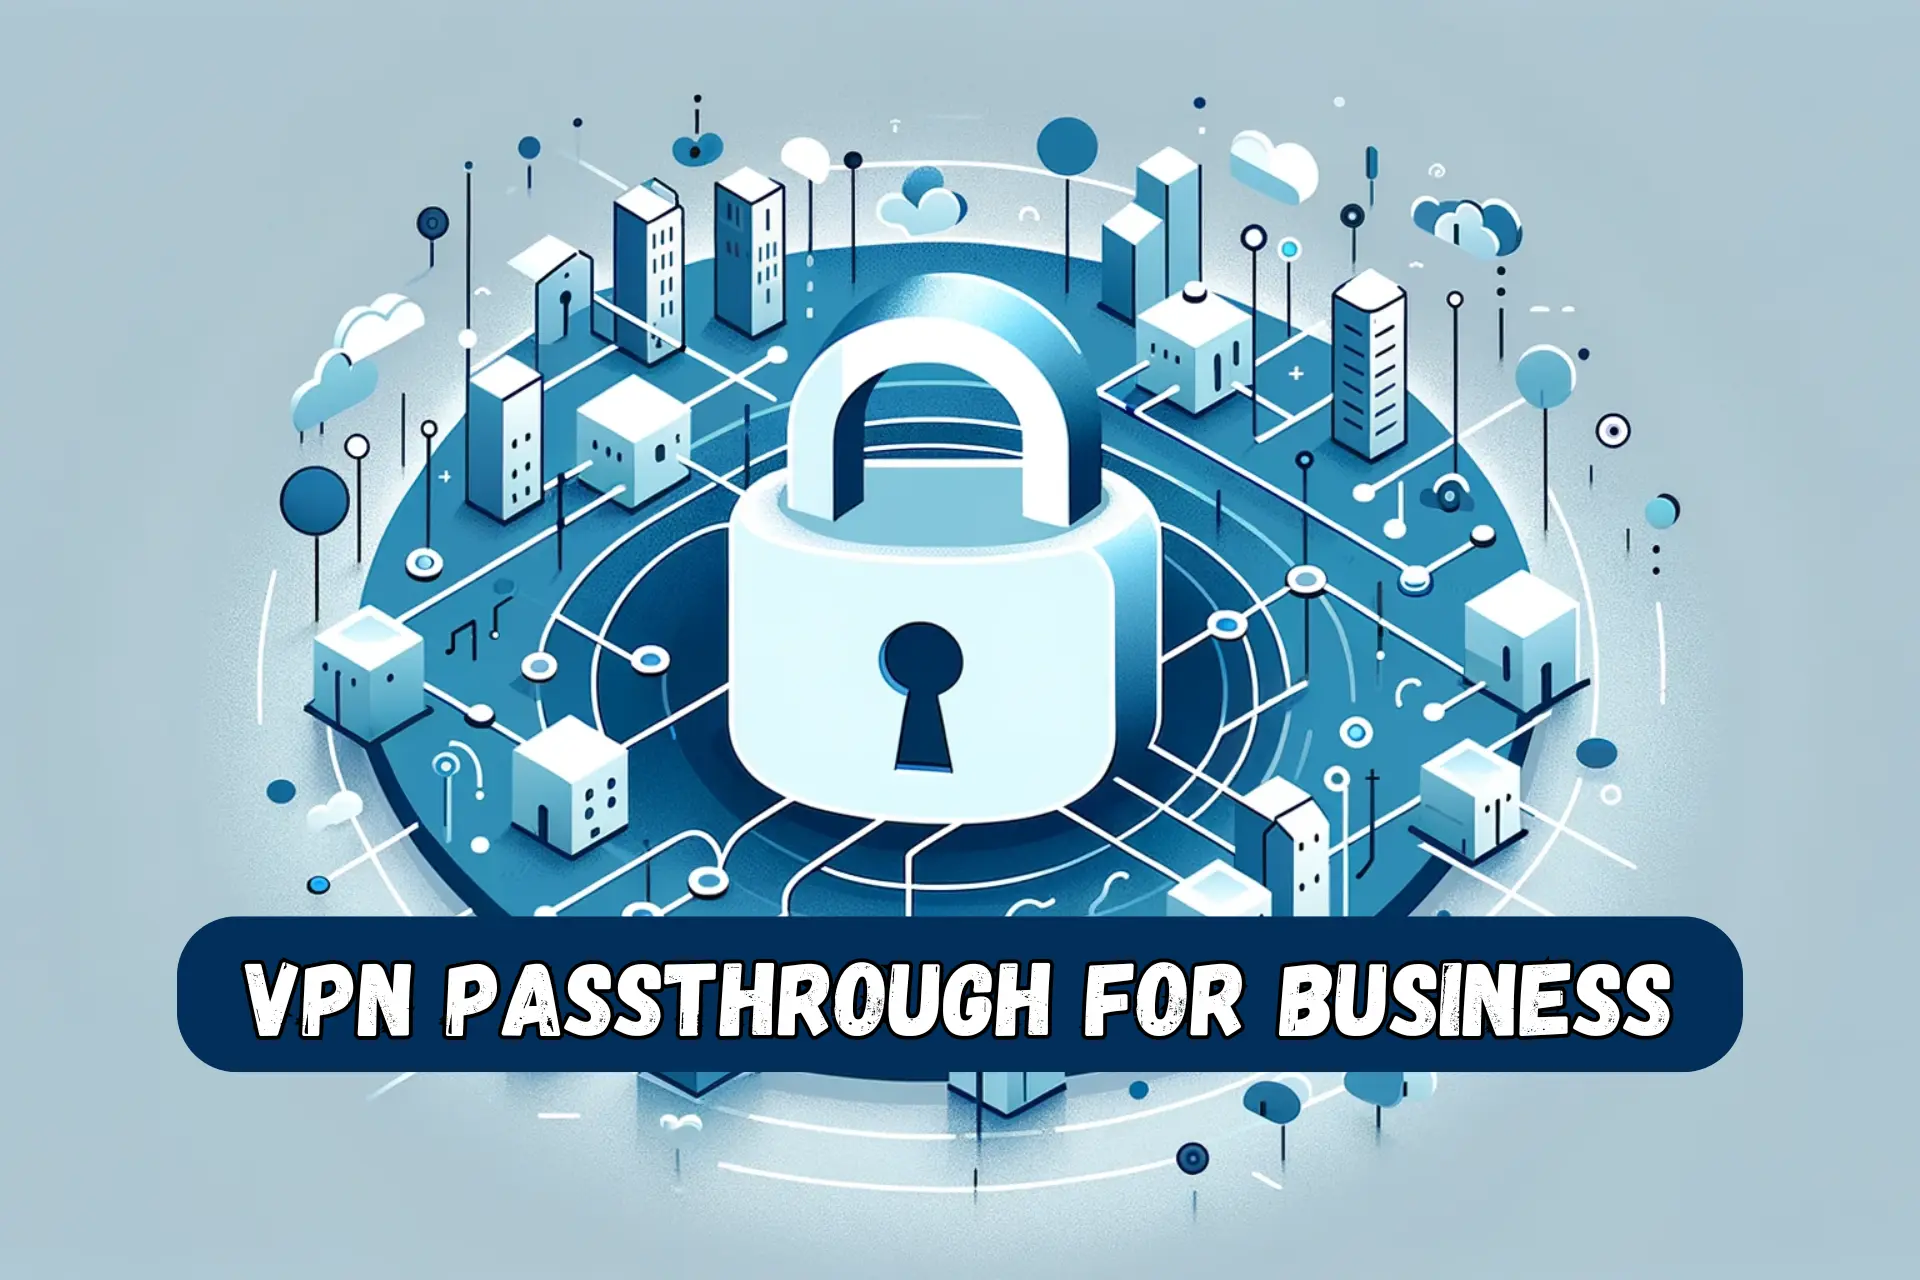 vpn passthrough business benefits